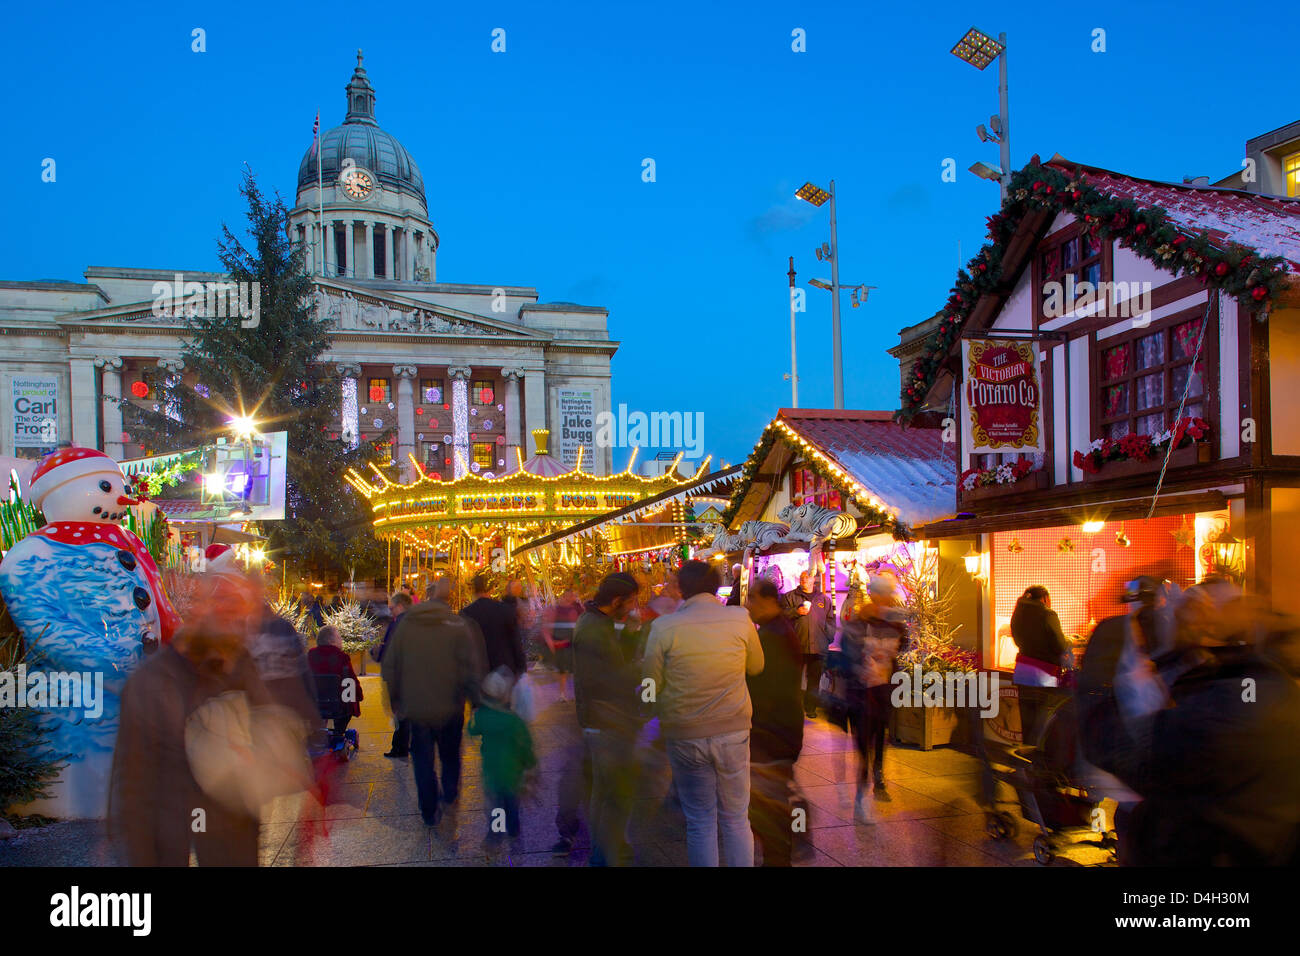 Council House, Christmas Market and carousel, Market Square, Nottingham, Nottinghamshire, England, UK Stock Photo